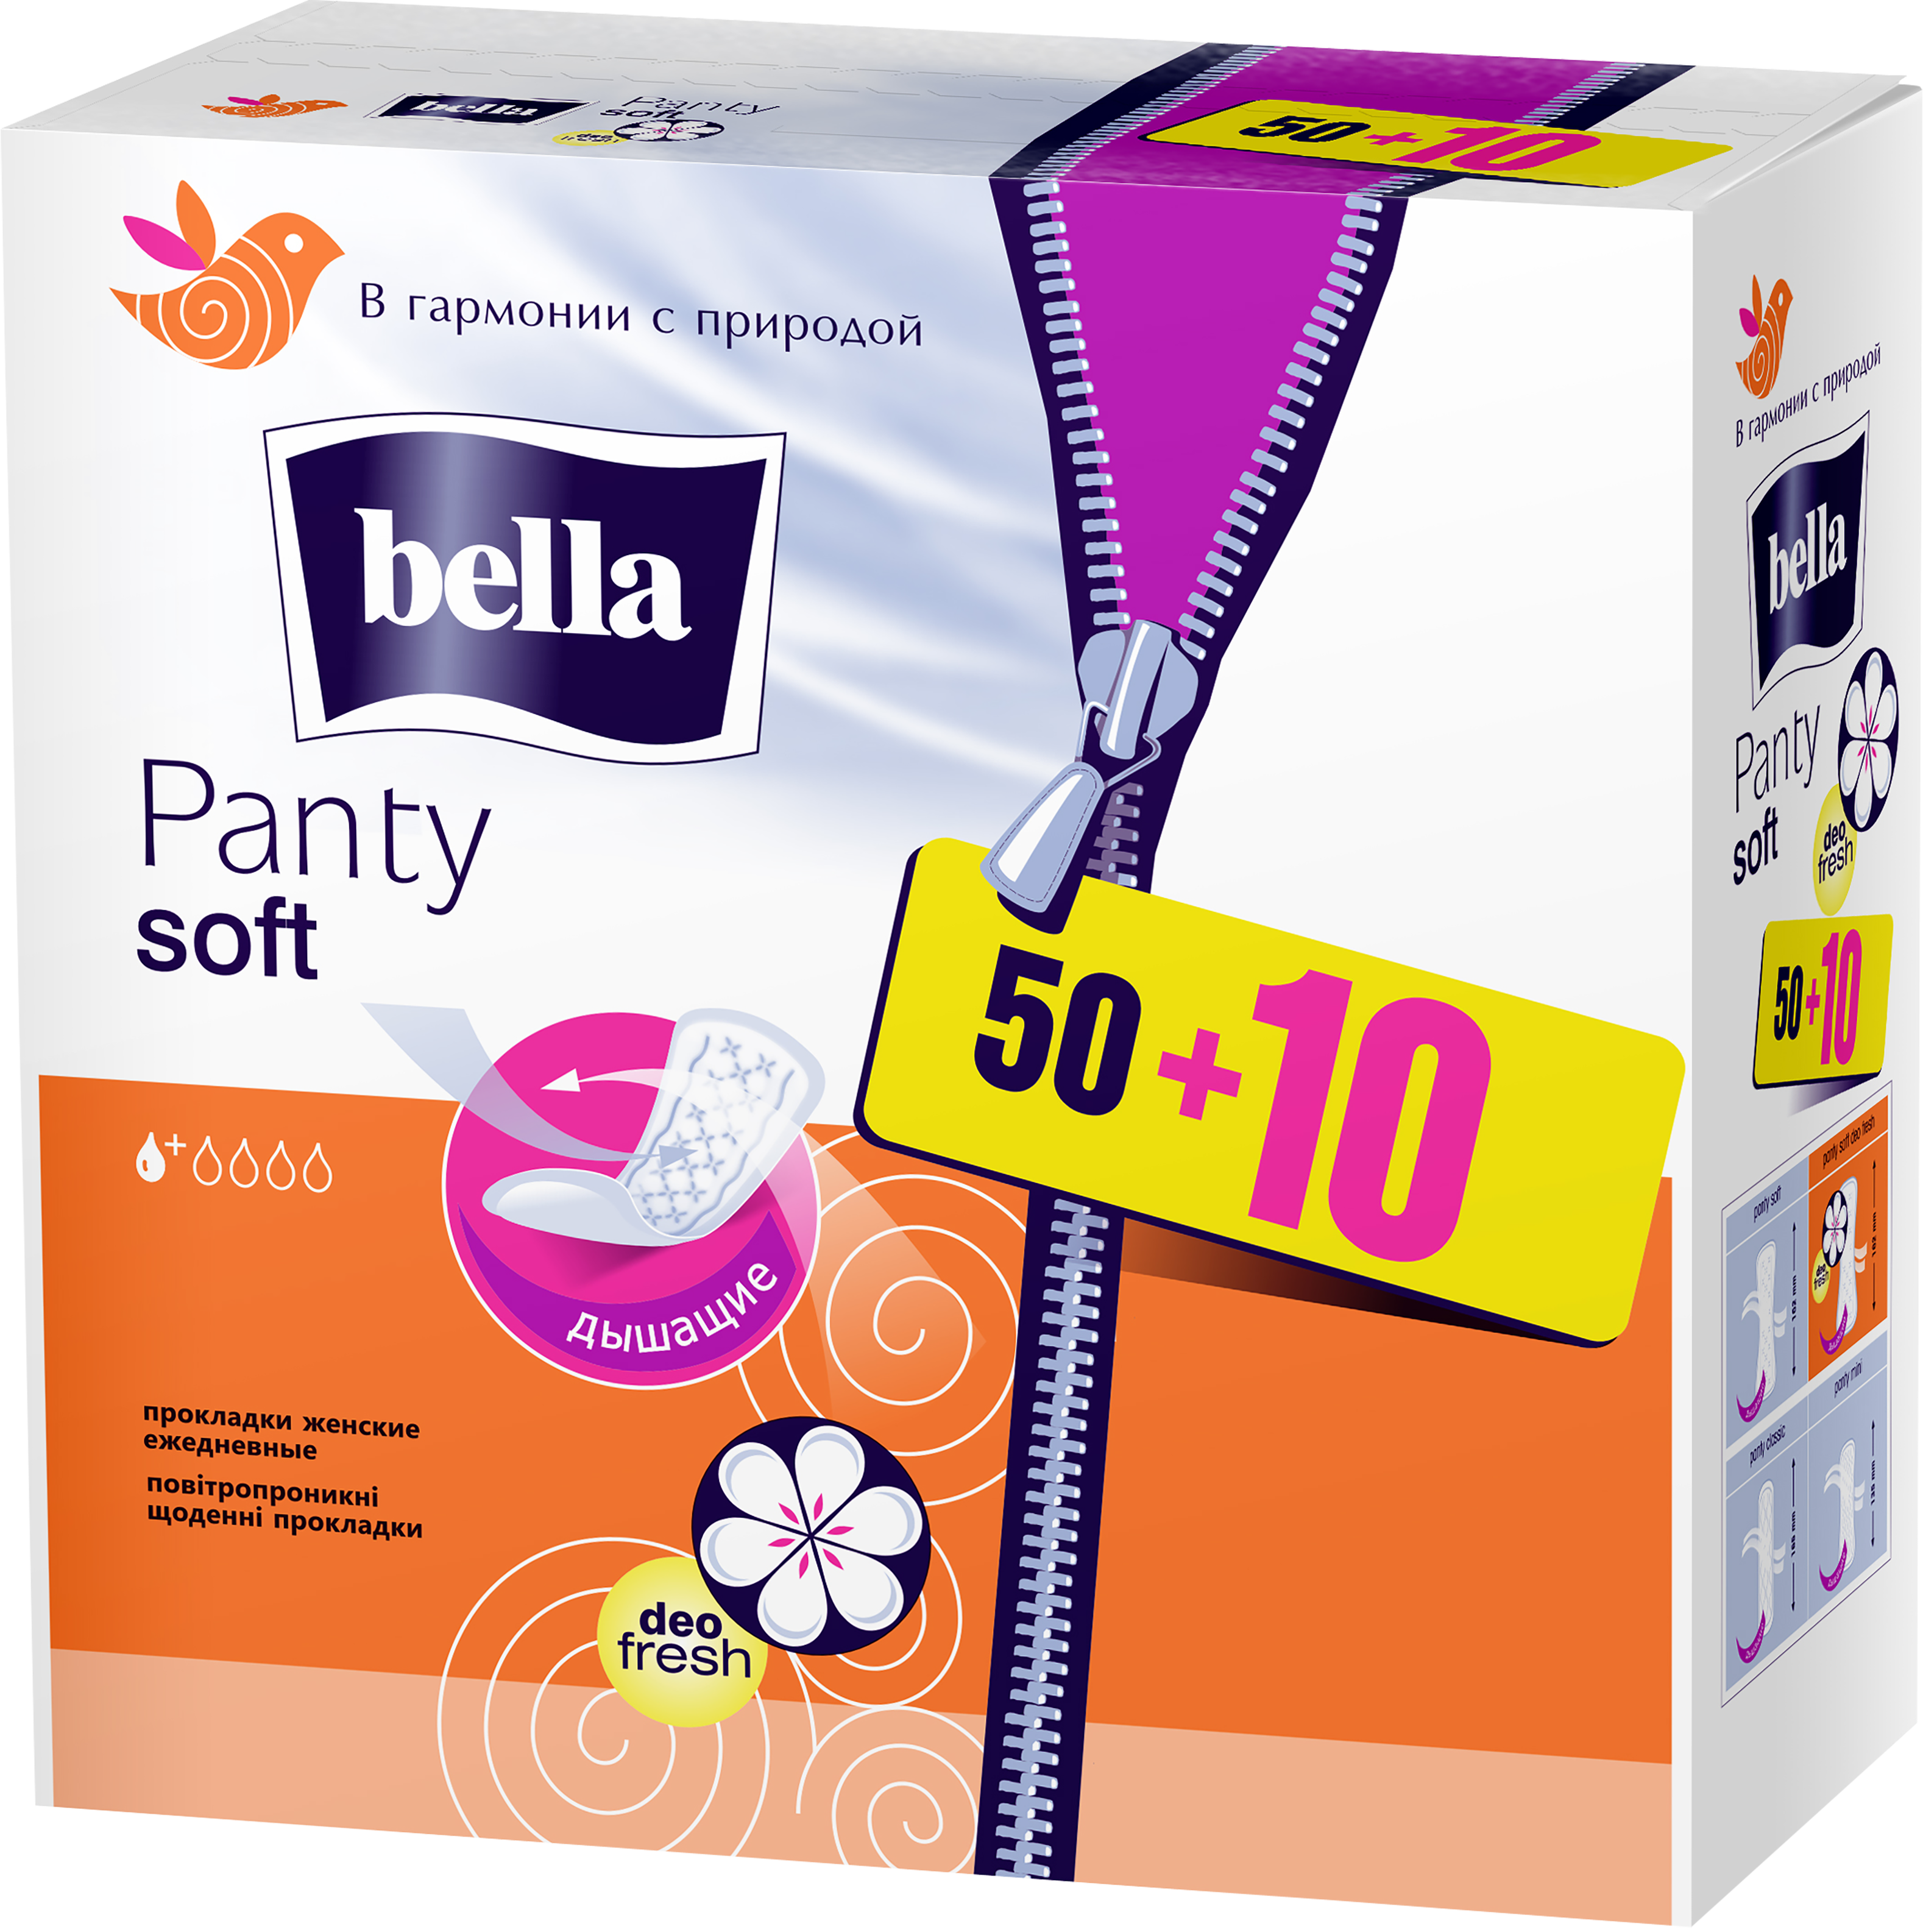 Ежедневные прокладки Bella Panty Soft deo fresh 50+10 шт. - фото 1